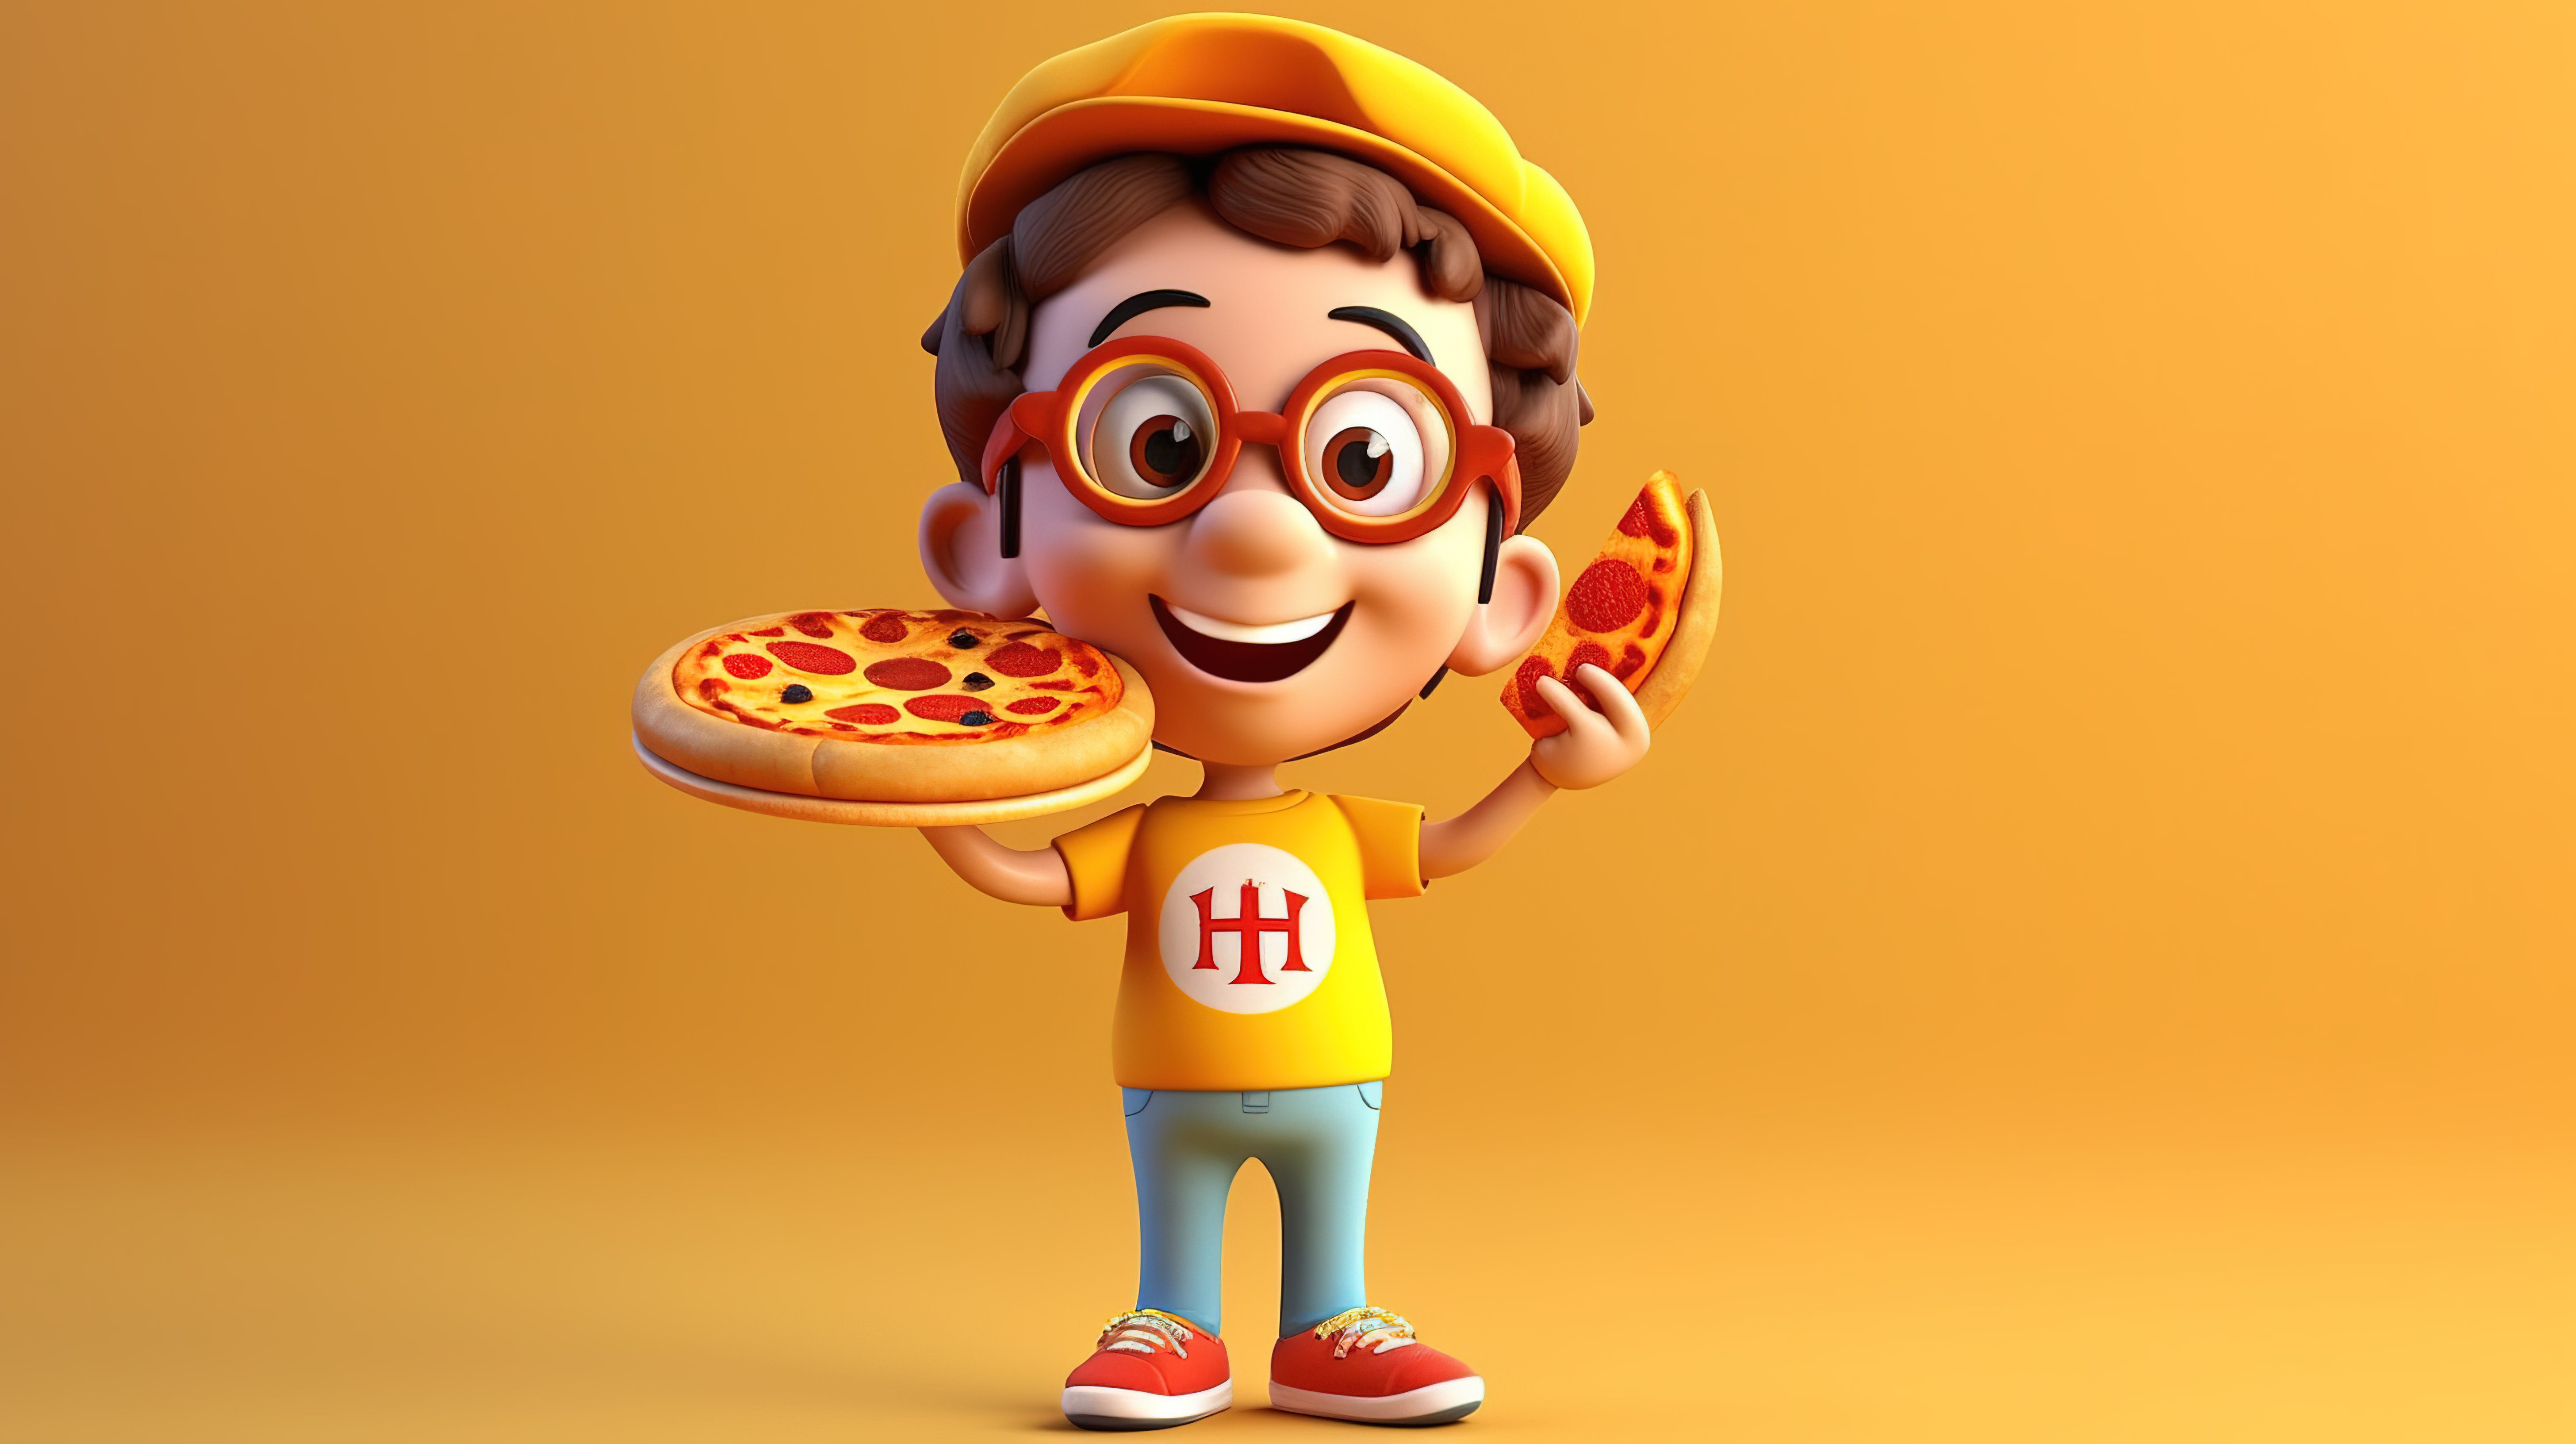 热爱披萨的卡通人物带来乐趣和 3D 魅力图片